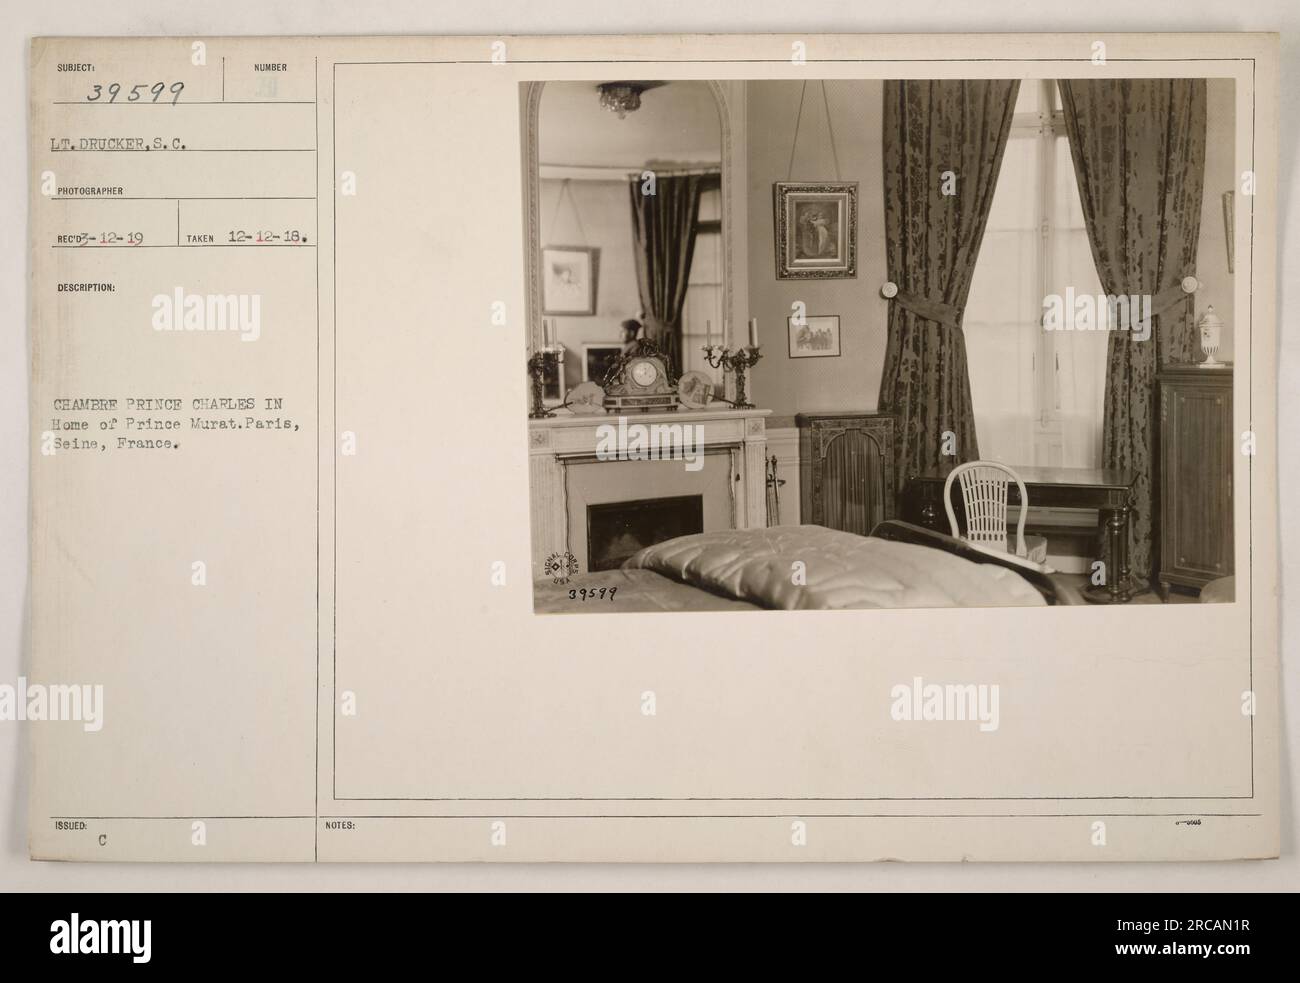 LT. Drucker, S.C., fotografiert Prinz Charles in seinem Haus, dem Haus von Prinz Murat in Paris, seine, Frankreich. Dieses Foto wurde am 12. Dezember 1918 aufgenommen. Es handelt sich um Subjekt 39599 aus der Sammlung von Fotografien amerikanischer Militäraktivitäten während des Ersten Weltkriegs. Stockfoto